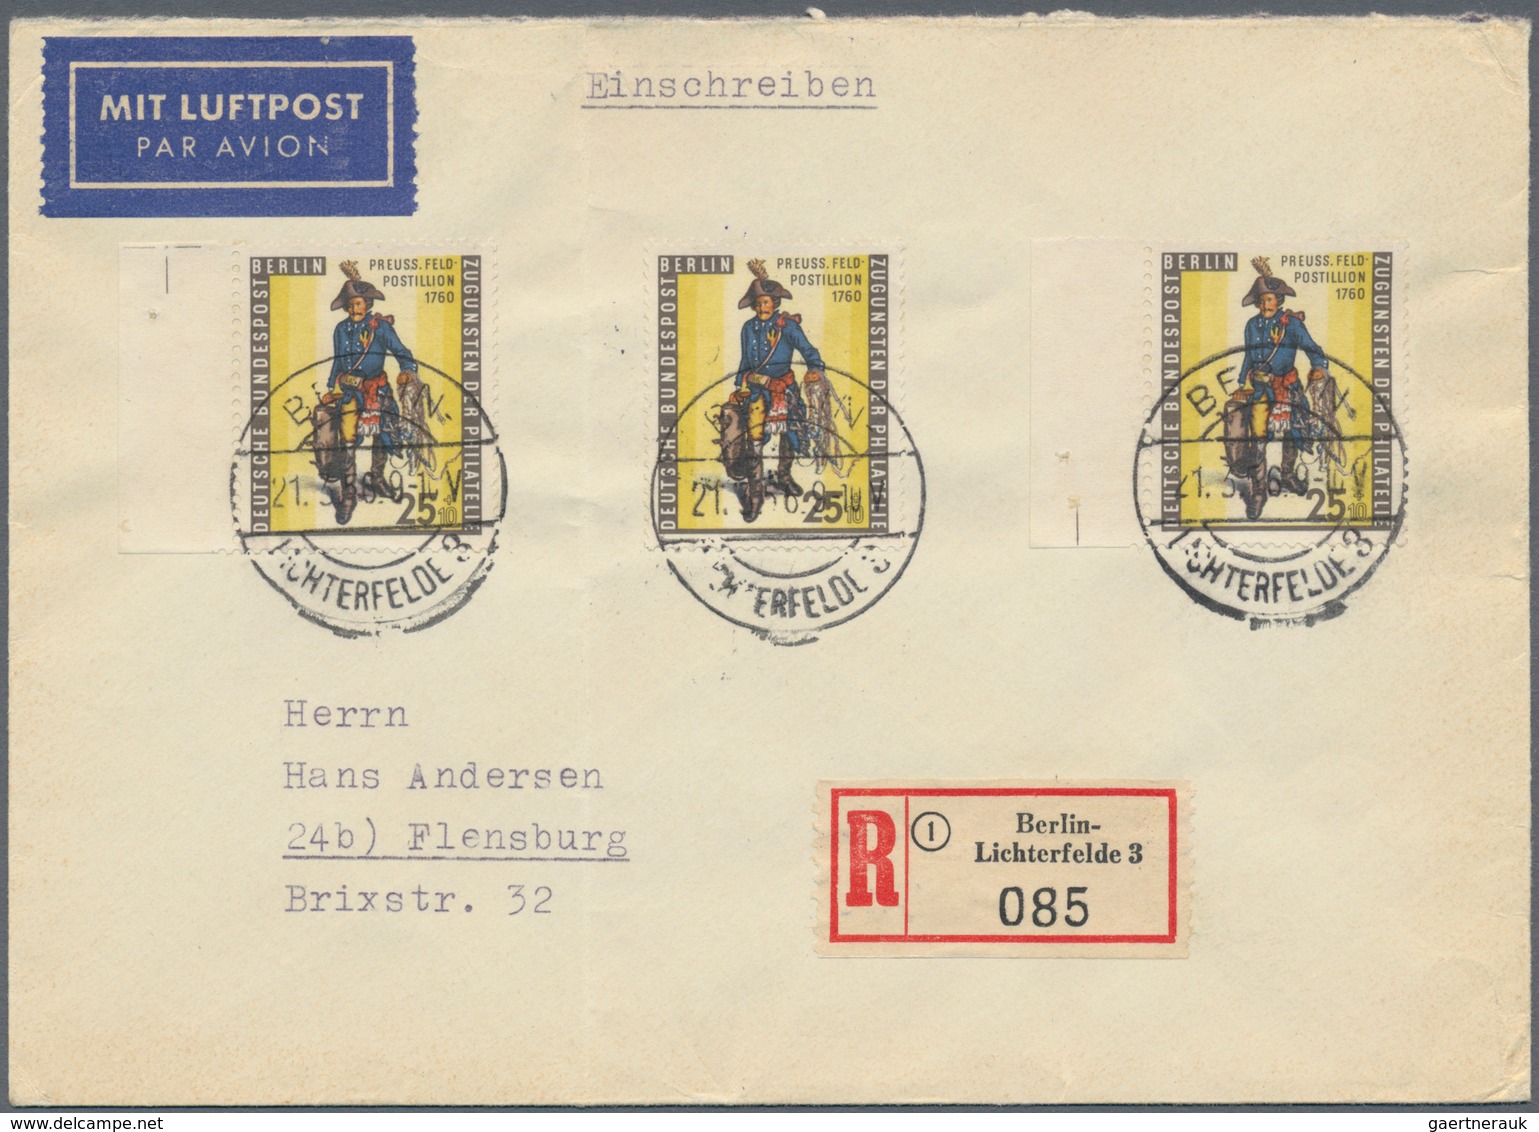 Berlin: 1945/1990, umfassende Sammlung von ca. 1.420 Briefen und Karten ab einigen Vorläufern bis hi